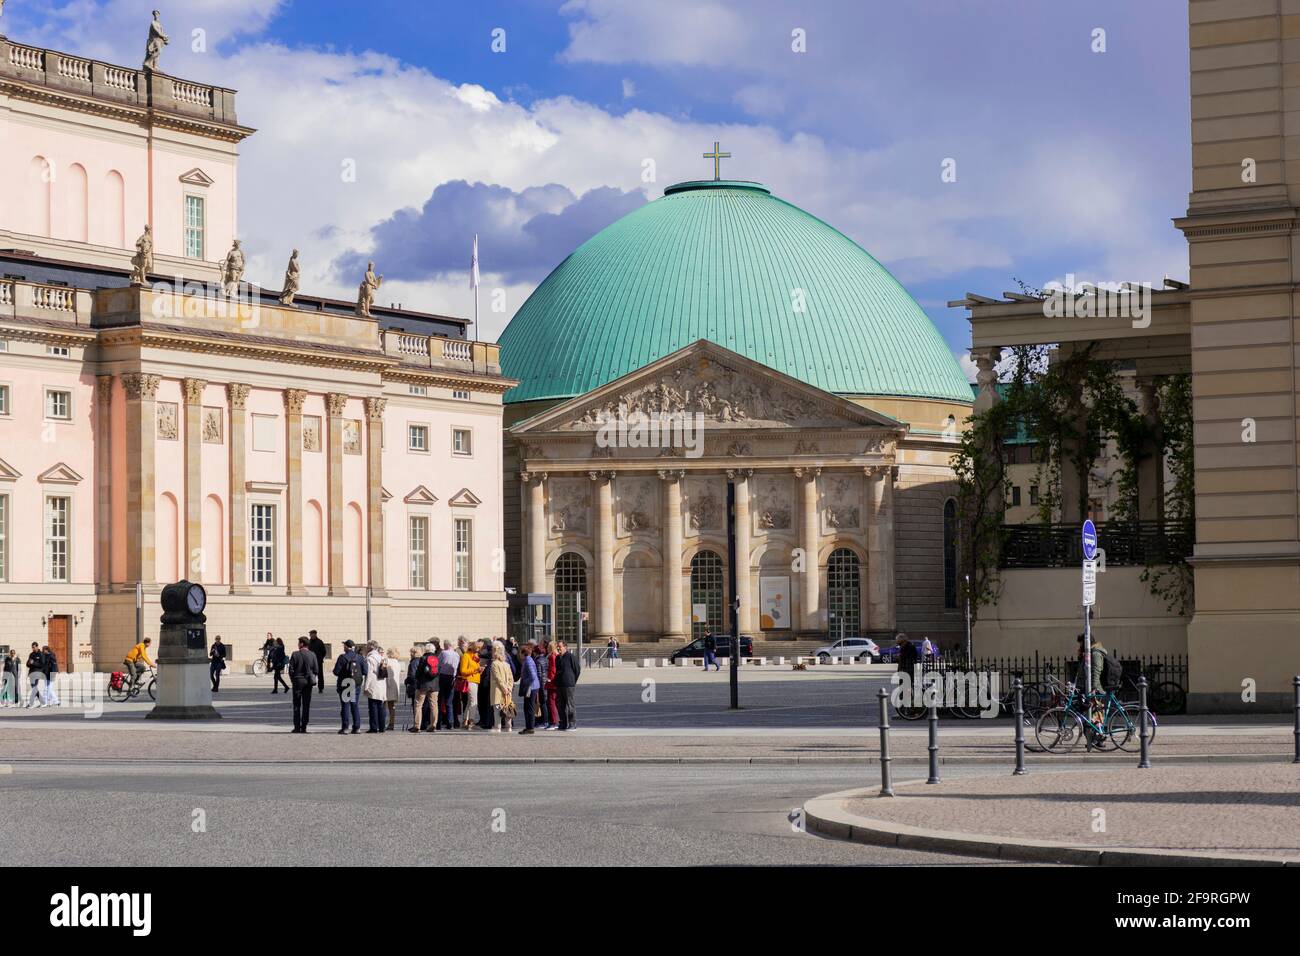 13 Mayo 2019 Berlín, Alemania - Grupo de turistas, Catedral de San Hedwig o Catedral de Sankt Hedwigs, Catedral Católica Romana, Bebelplatz. Foto de stock